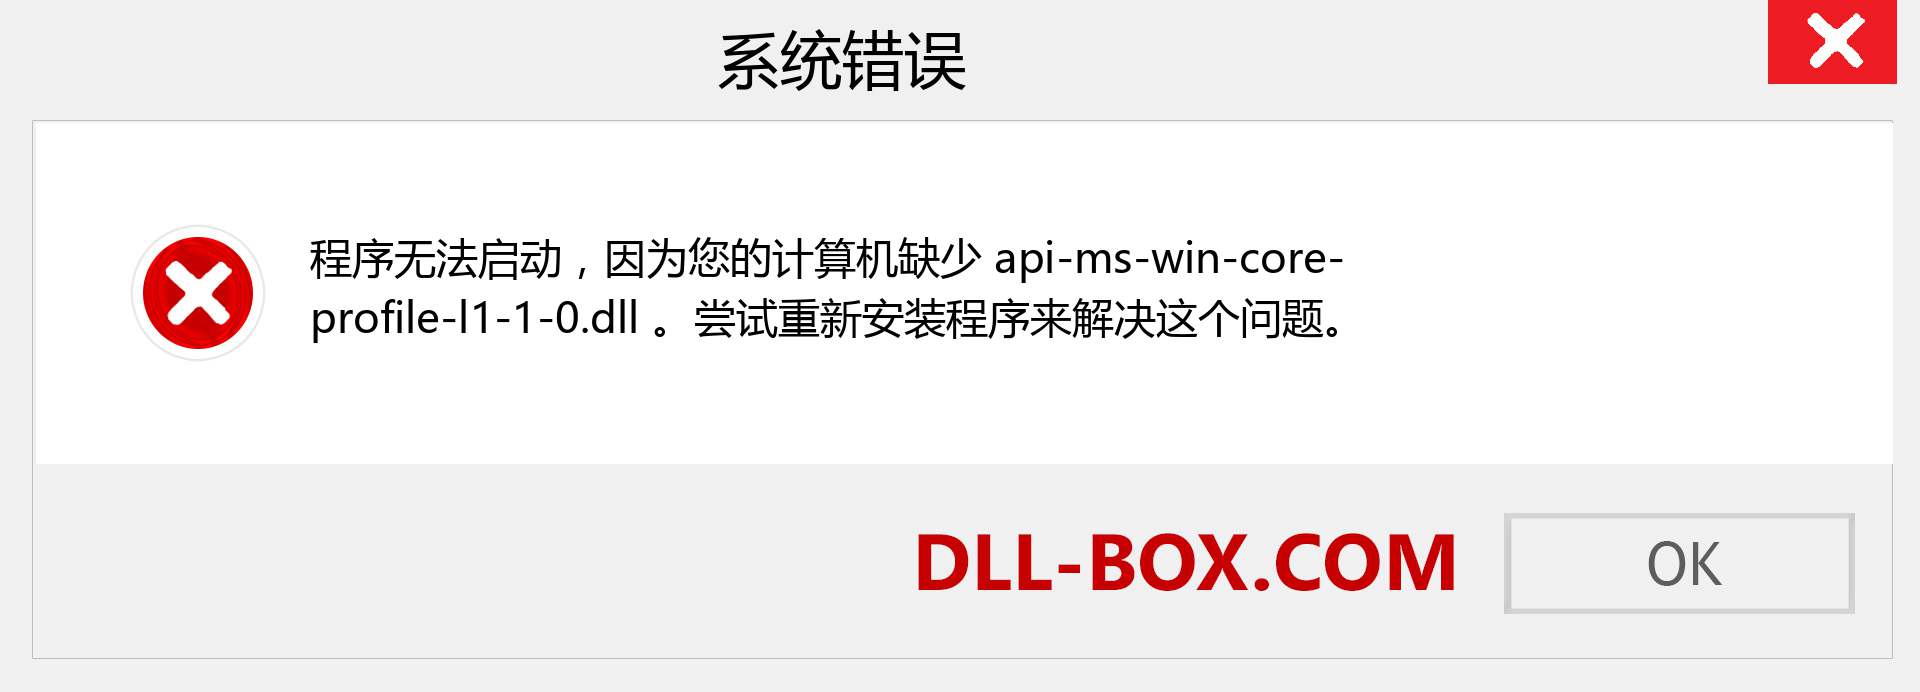 api-ms-win-core-profile-l1-1-0.dll 文件丢失？。 适用于 Windows 7、8、10 的下载 - 修复 Windows、照片、图像上的 api-ms-win-core-profile-l1-1-0 dll 丢失错误